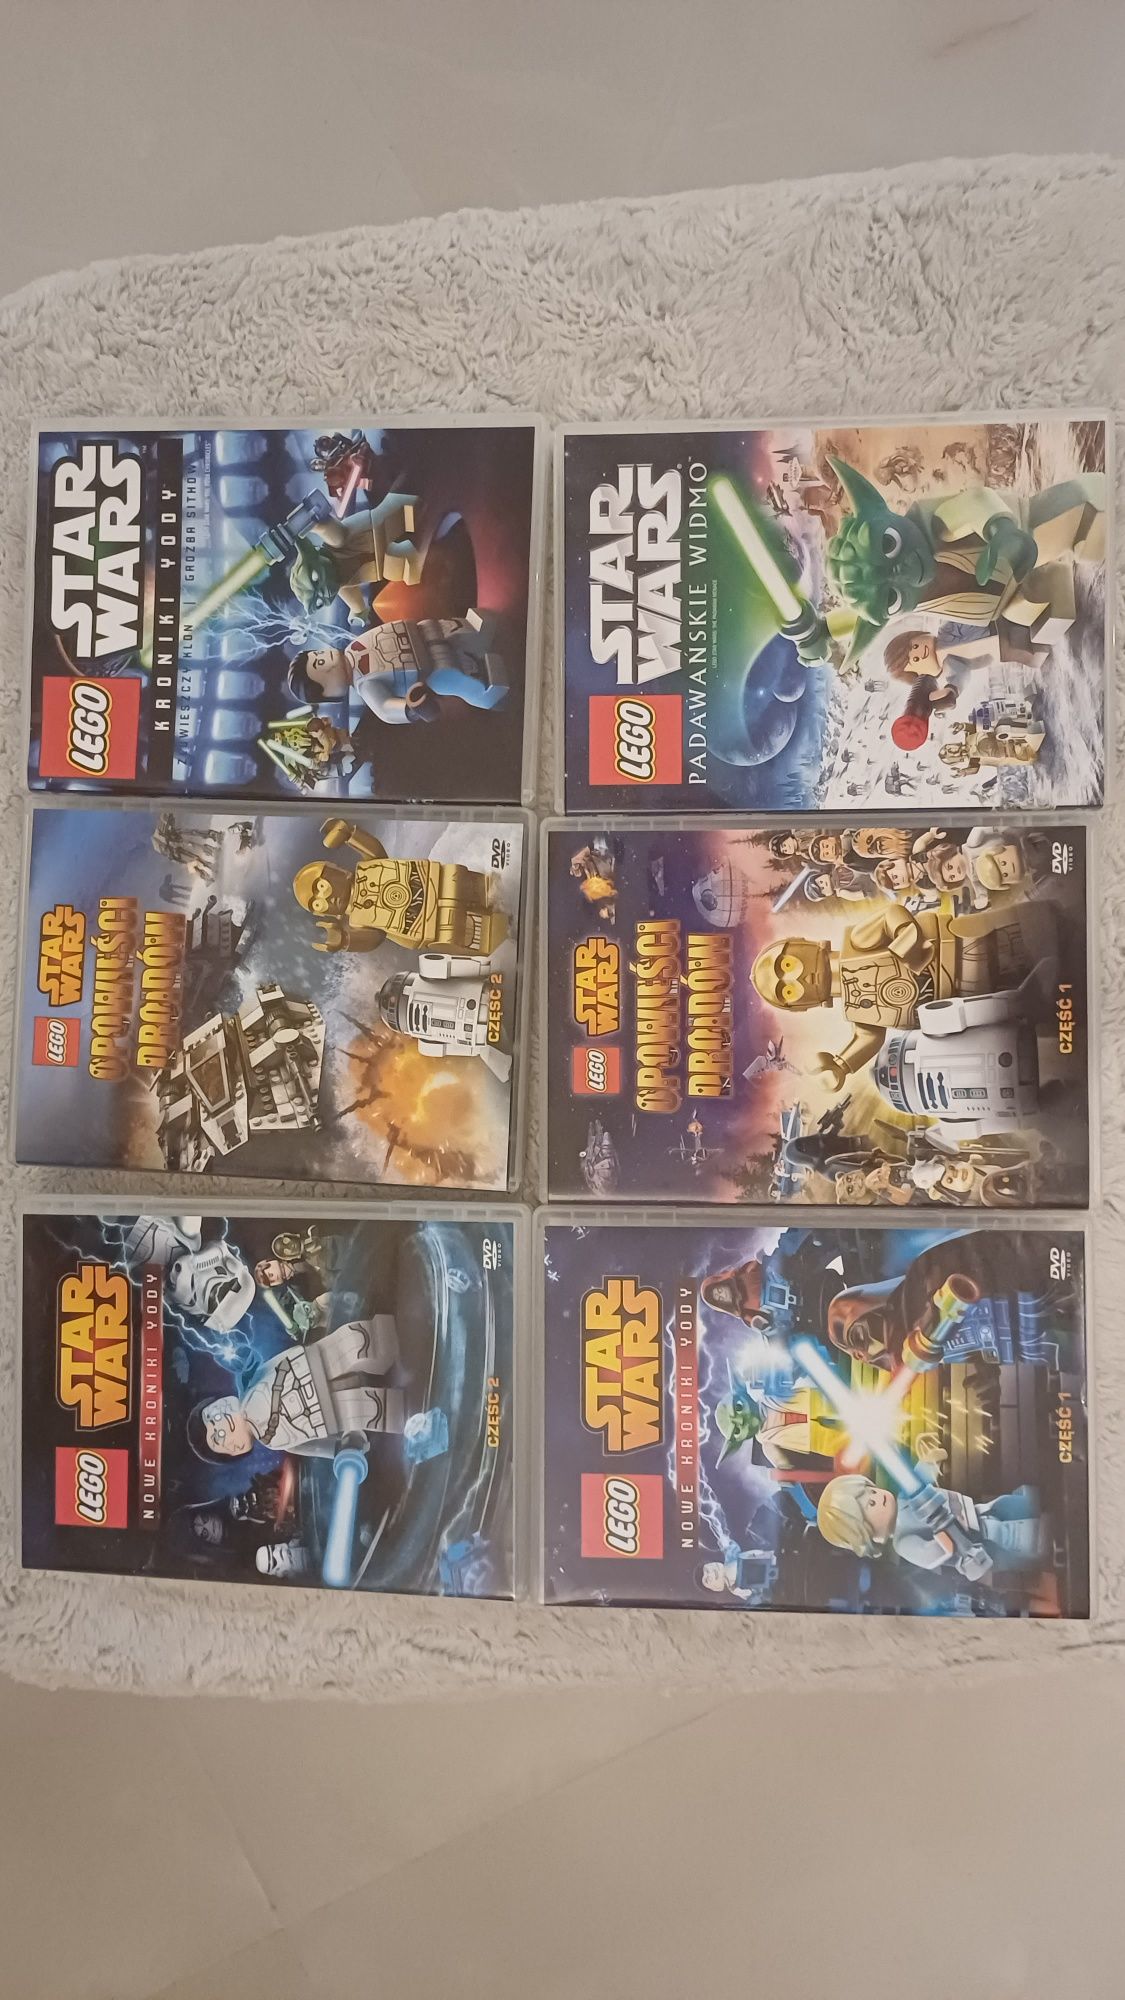 Bajki filmy DVD lego star wars